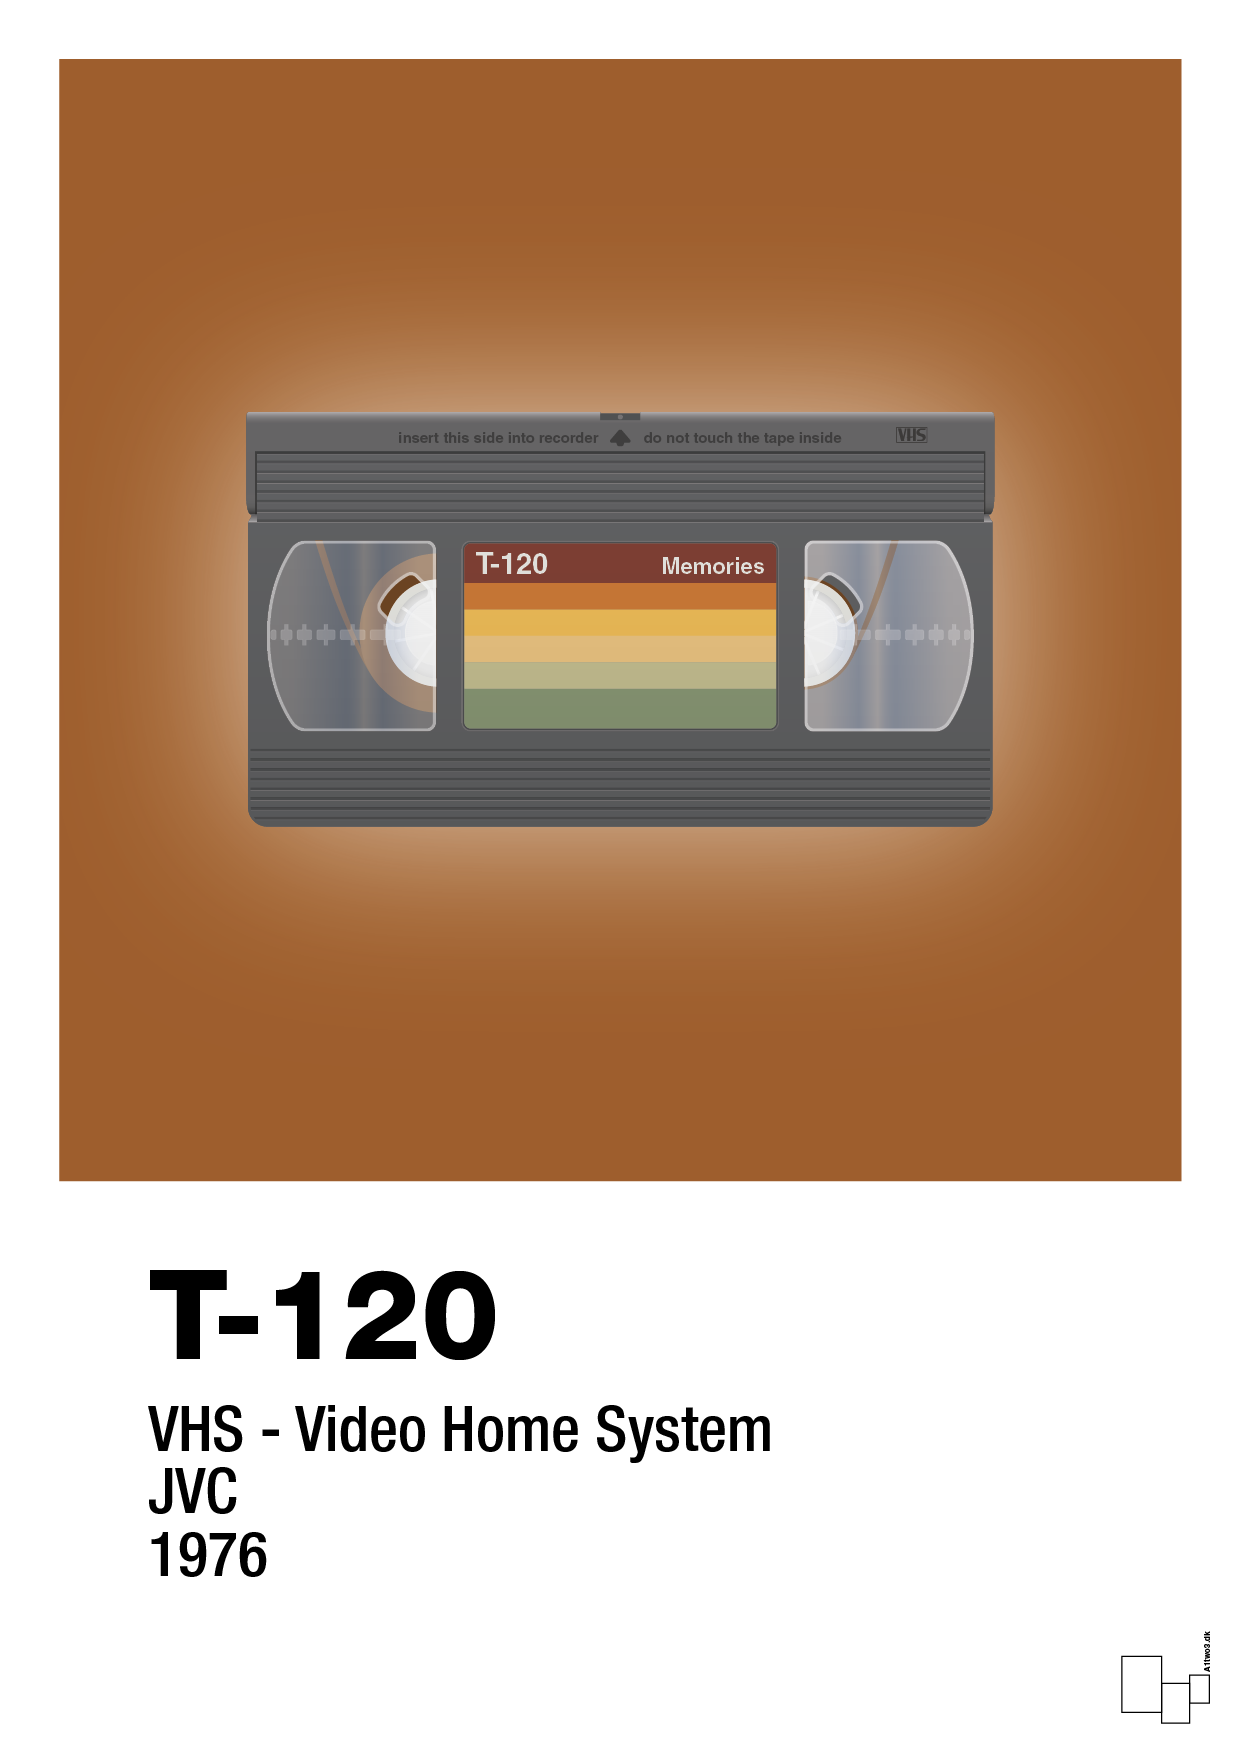 videobånd t-120 - Plakat med Grafik i Cognac